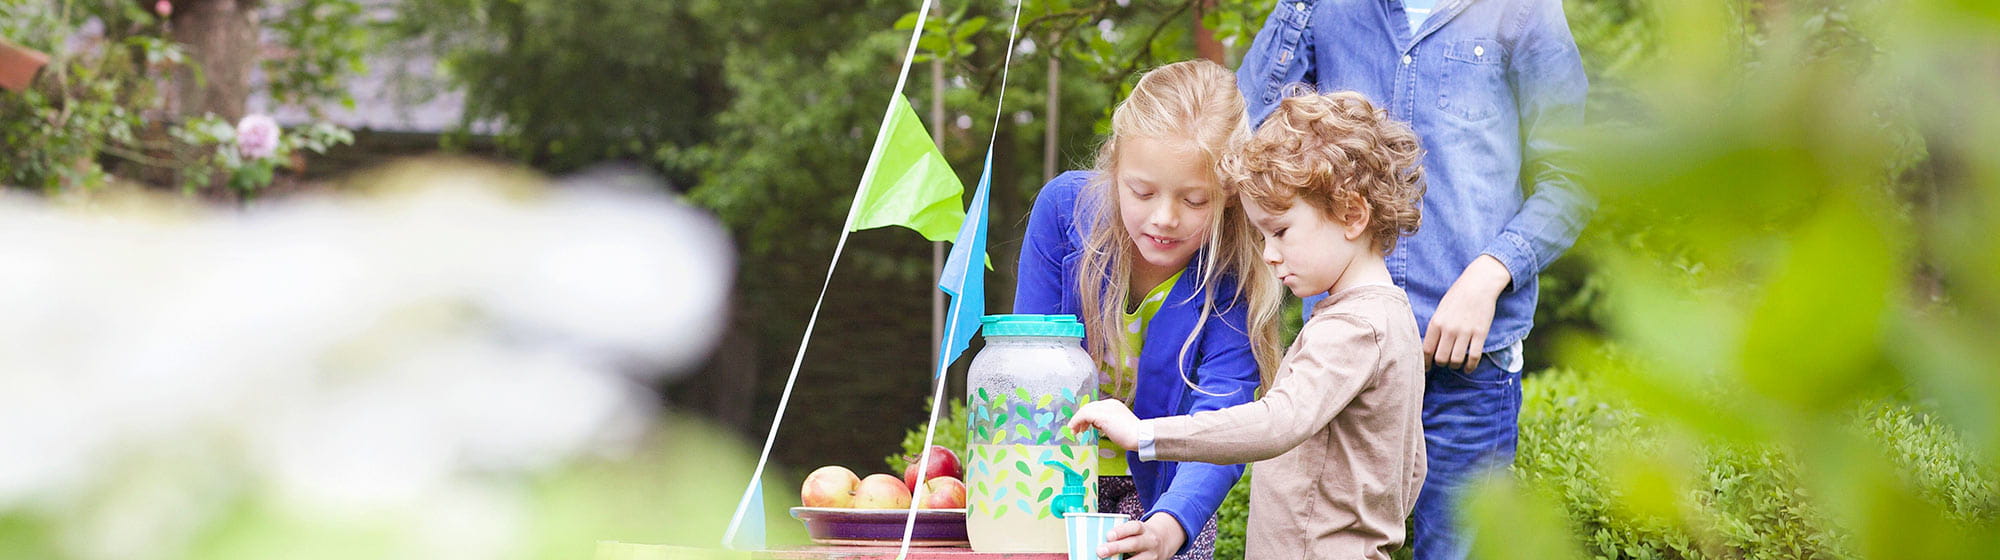 Kids drinking lemonade in a garden 